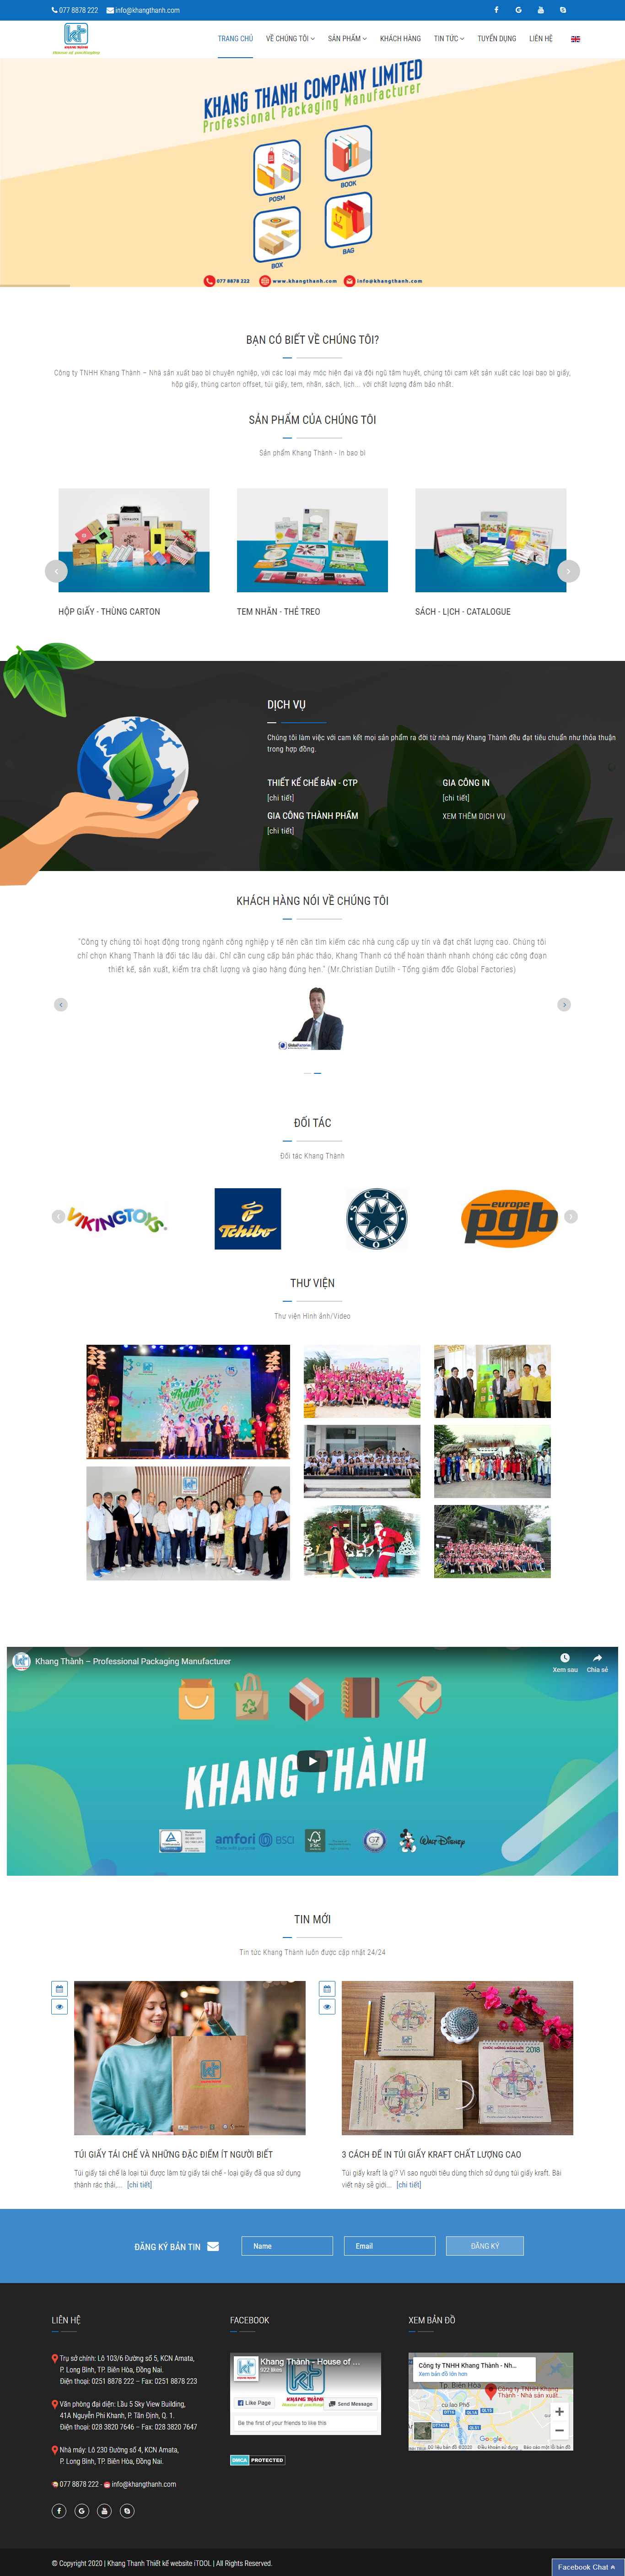 Thiết kế Website sản xuất bao bì - khangthanh.com